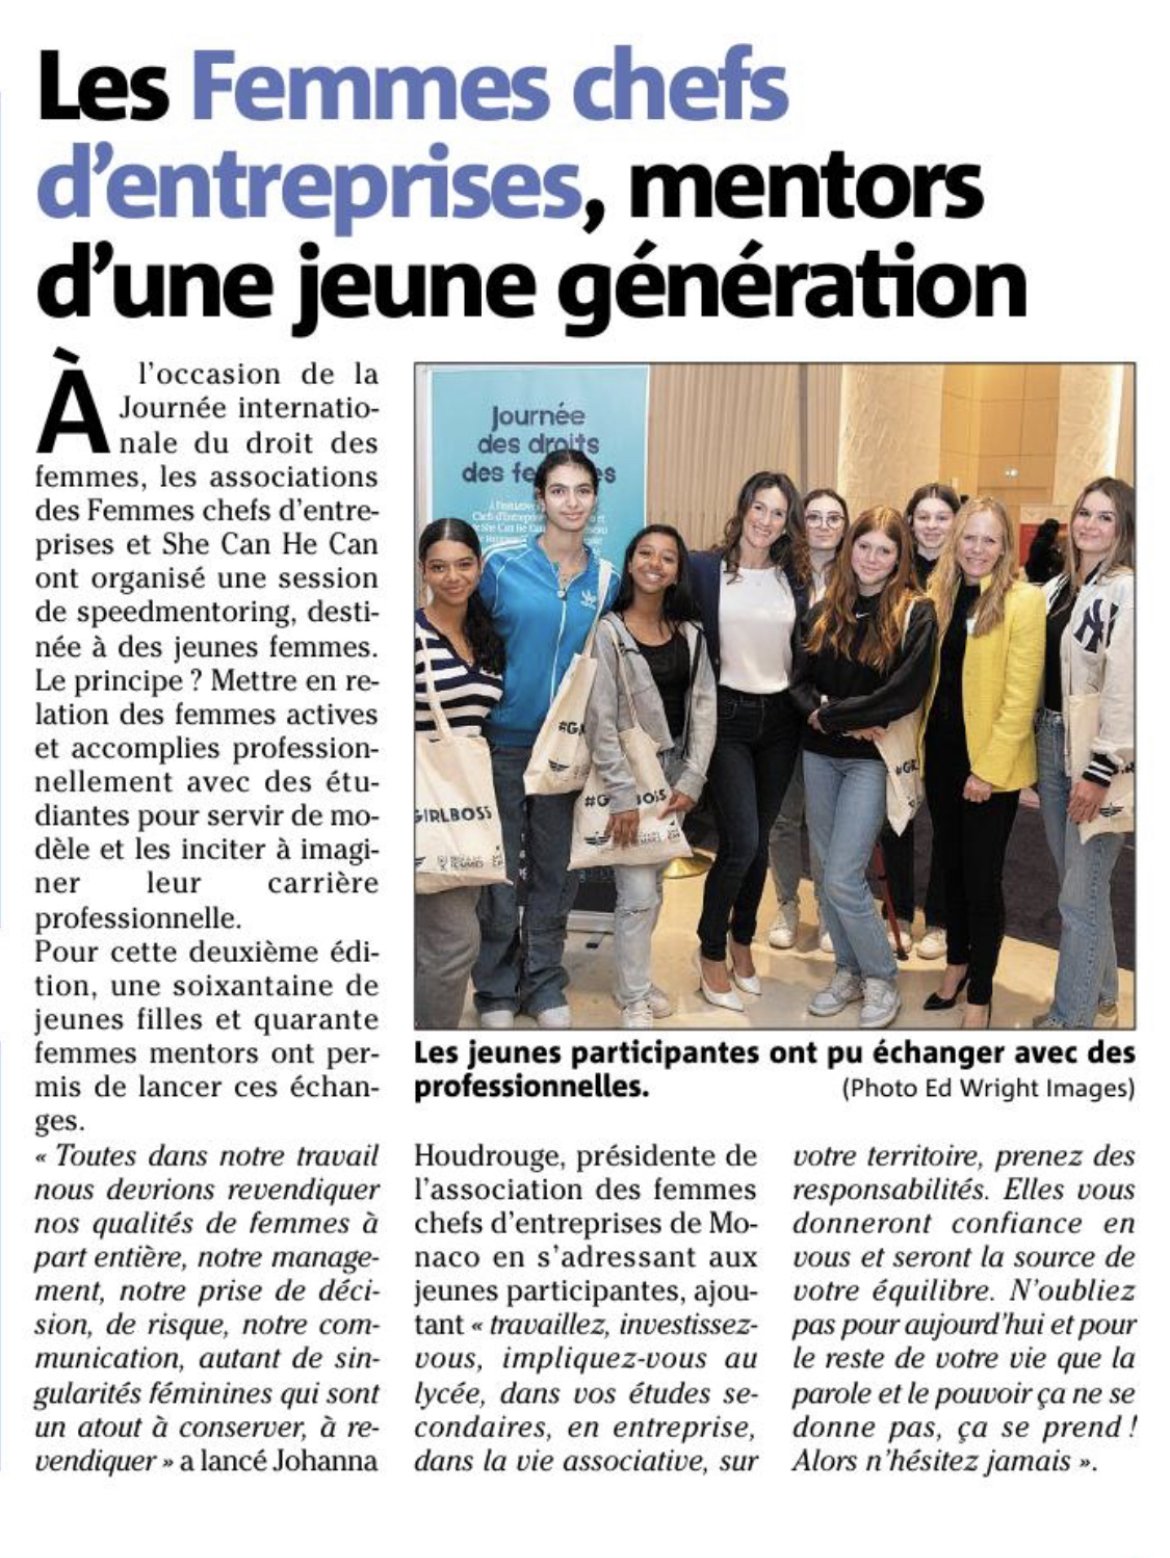 Article “Les Femmes Chefs d’Entreprises, Mentors d’une jeune génération” Monaco Matin